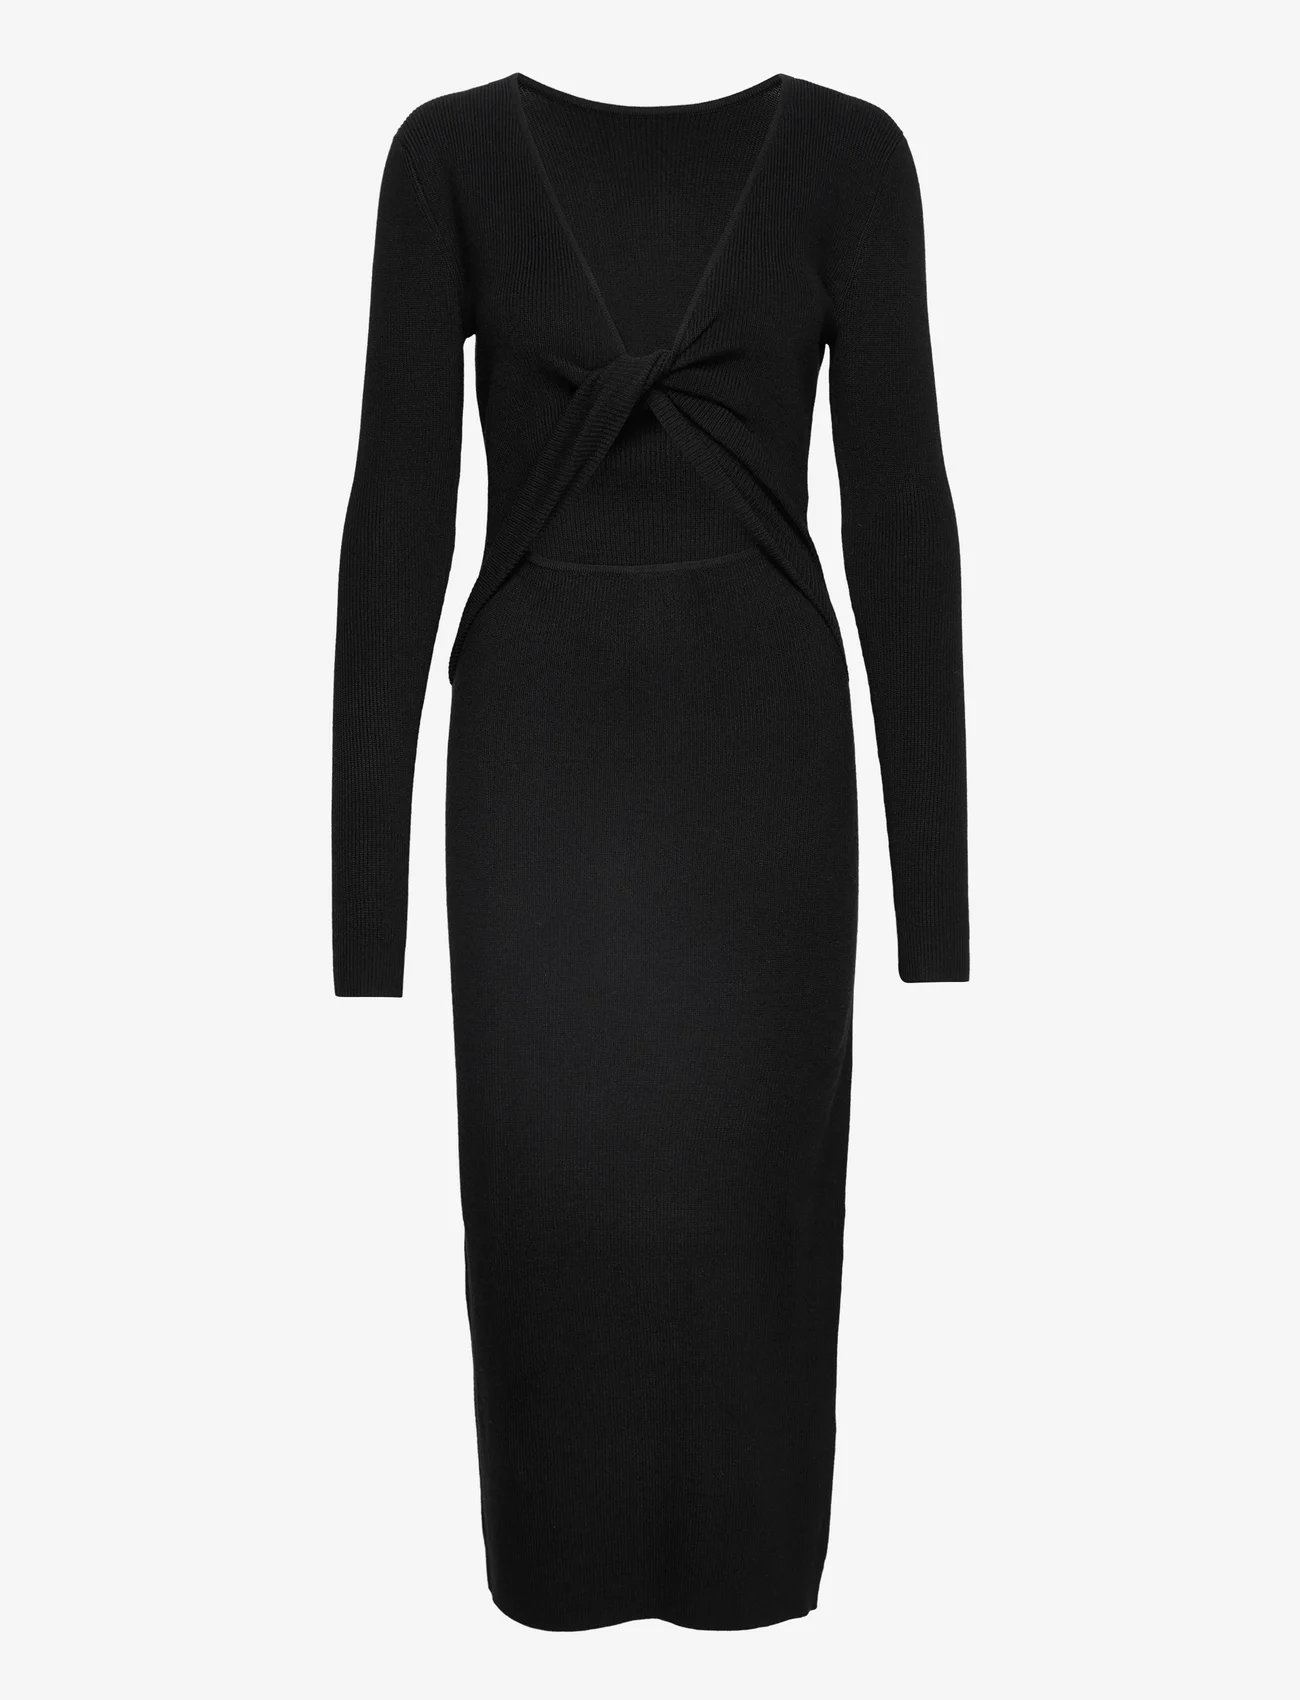 bzr - Lela Jenner dress - etuikleider - black - 0